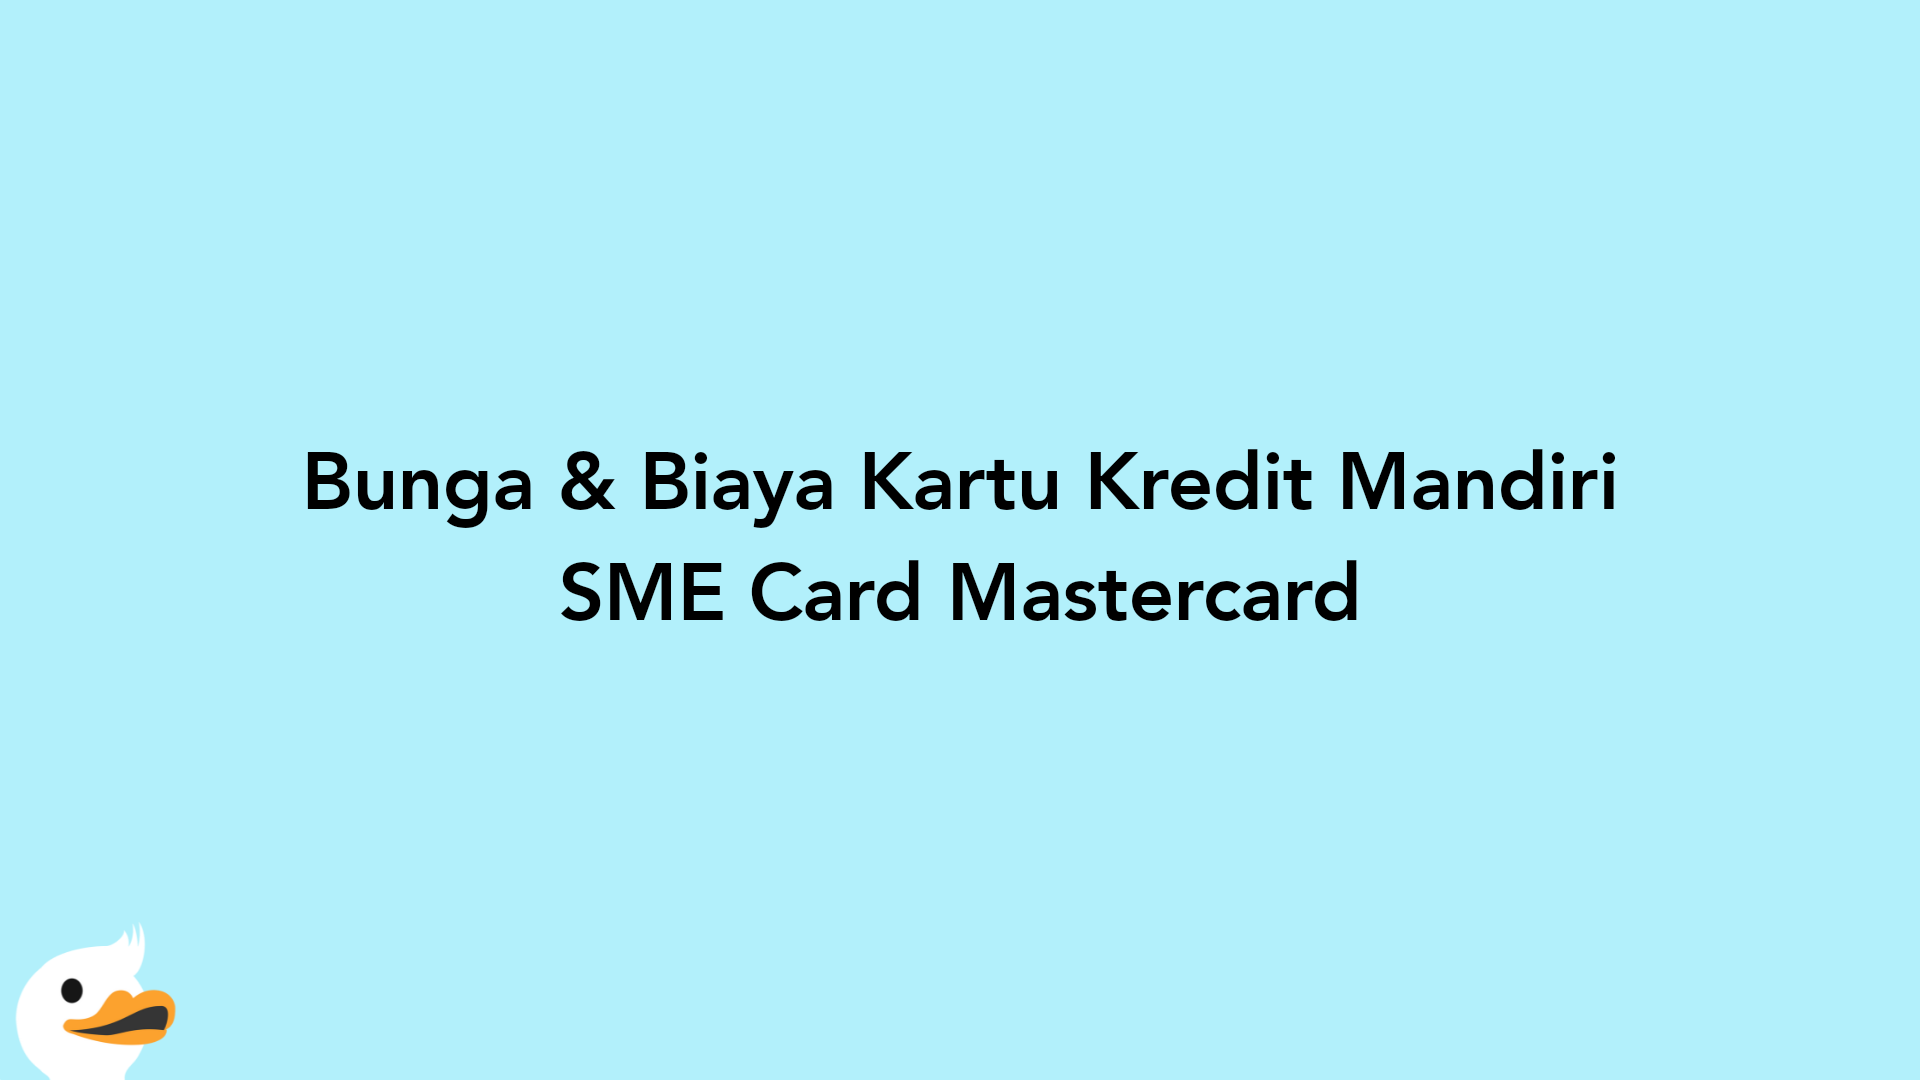 Bunga & Biaya Kartu Kredit Mandiri SME Card Mastercard